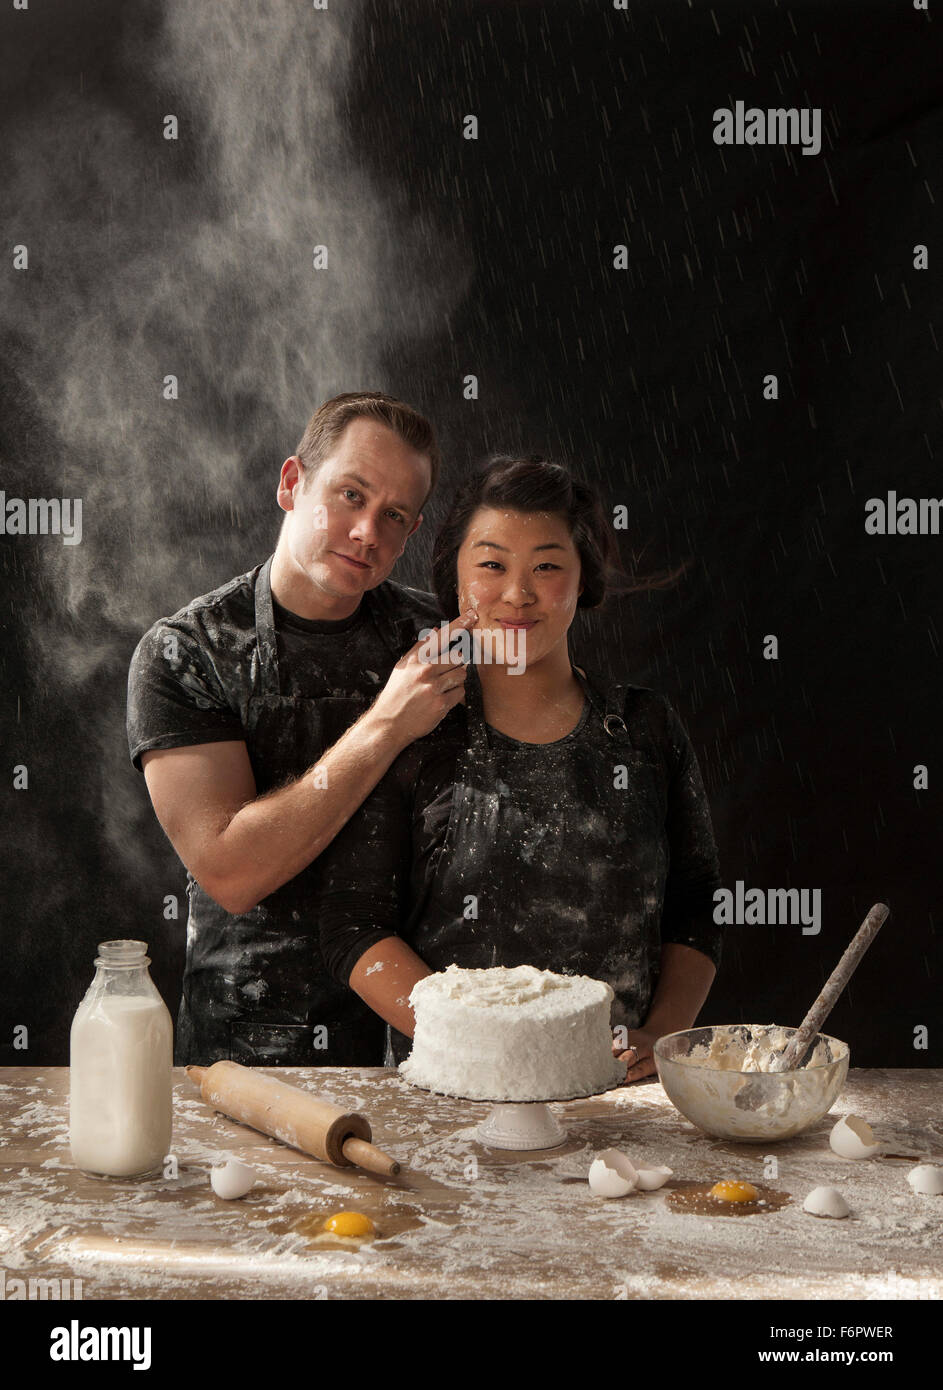 Messy couple baking cake Stock Photo